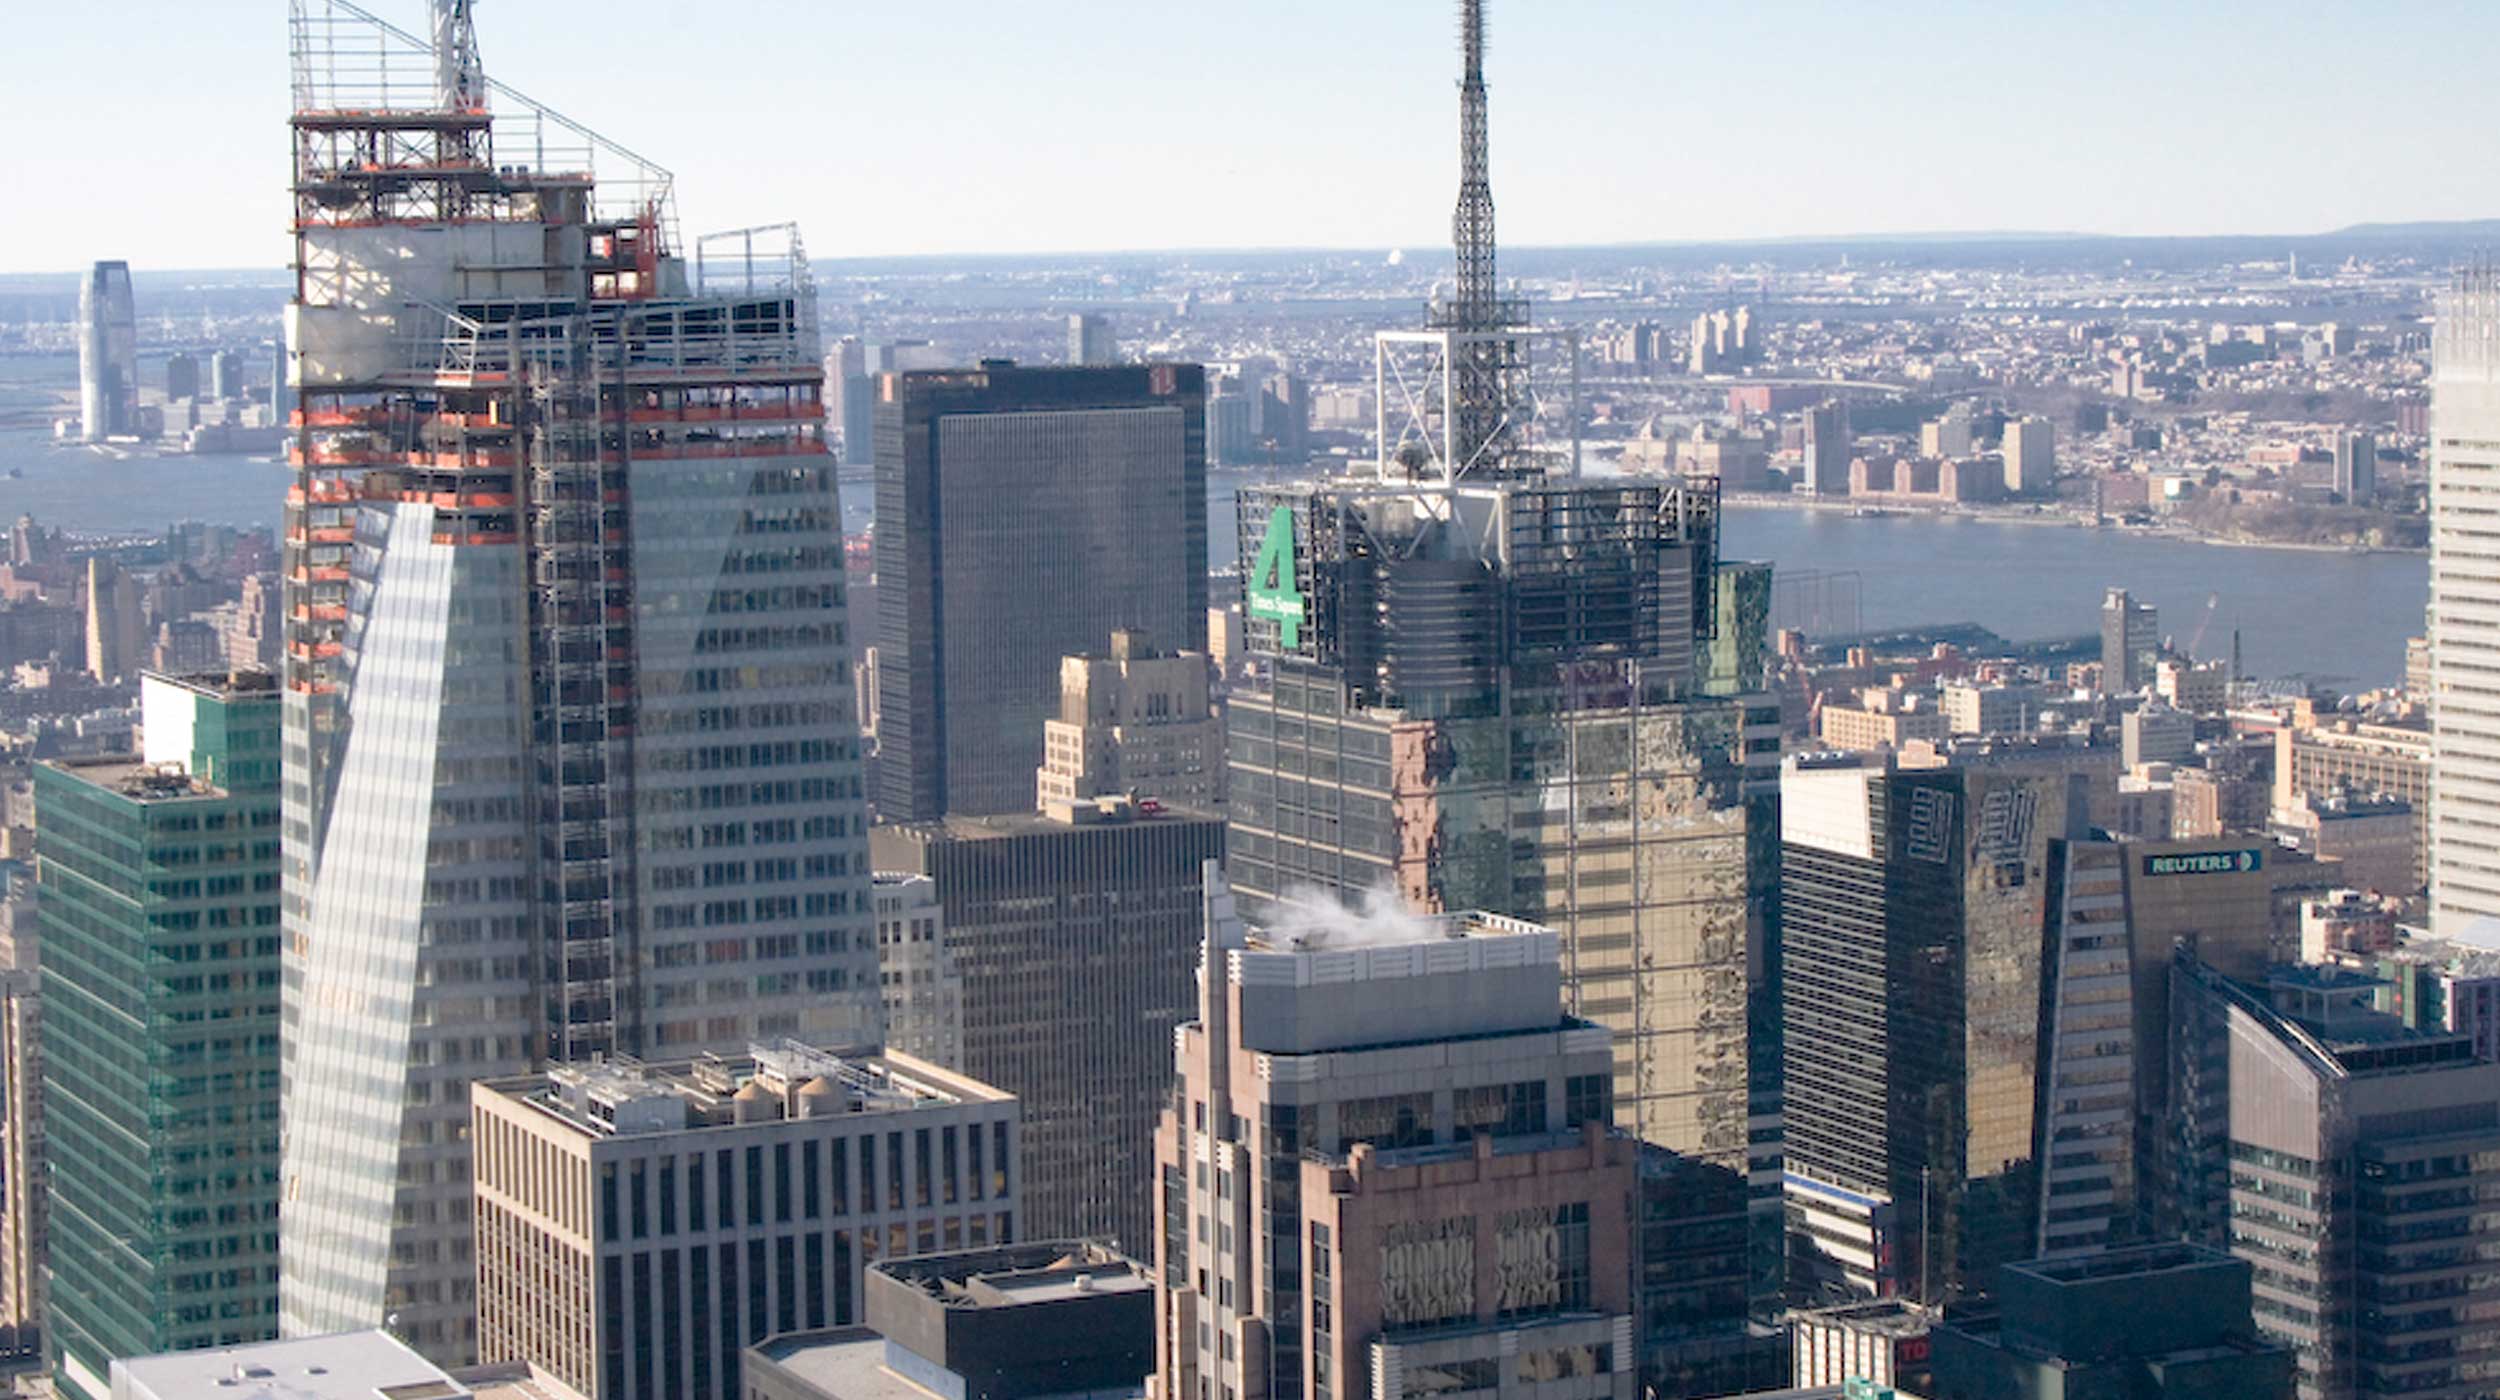 Los 300 m de altura y sus 200,000 m² conforman una torre de cristal, sede del Banco de América.